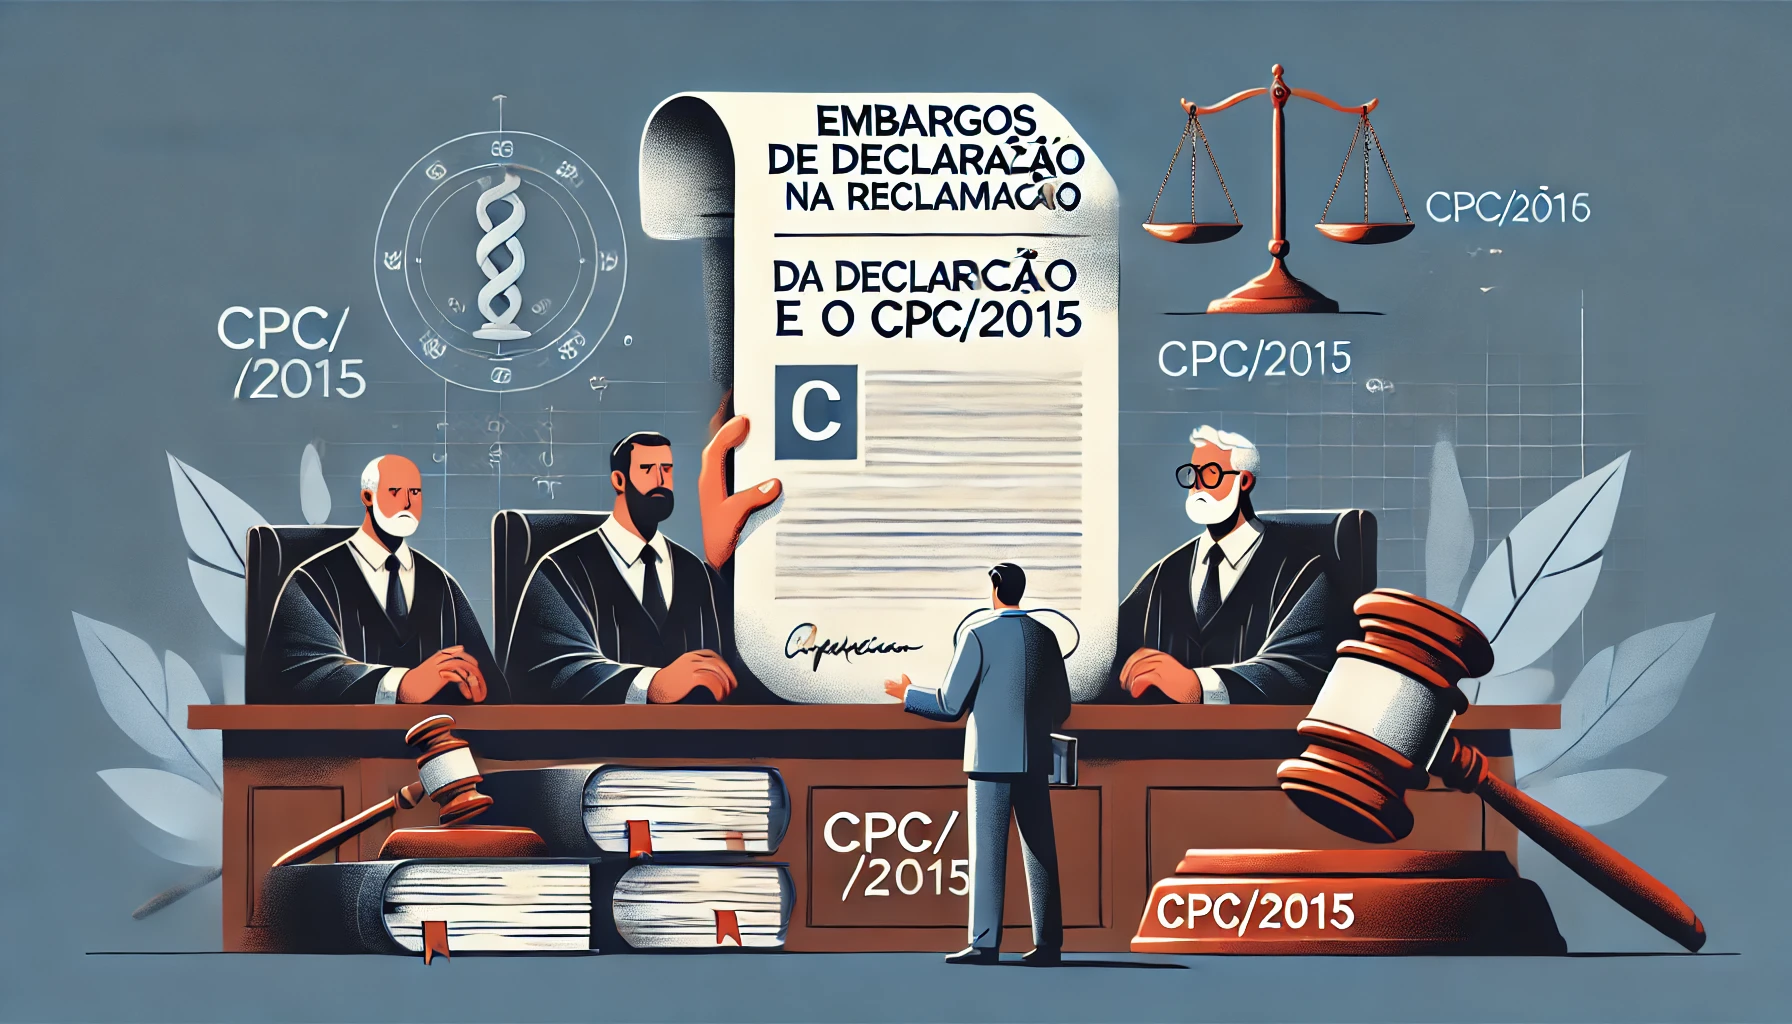 Embargos de Declaração na Reclamação e o CPC/2015